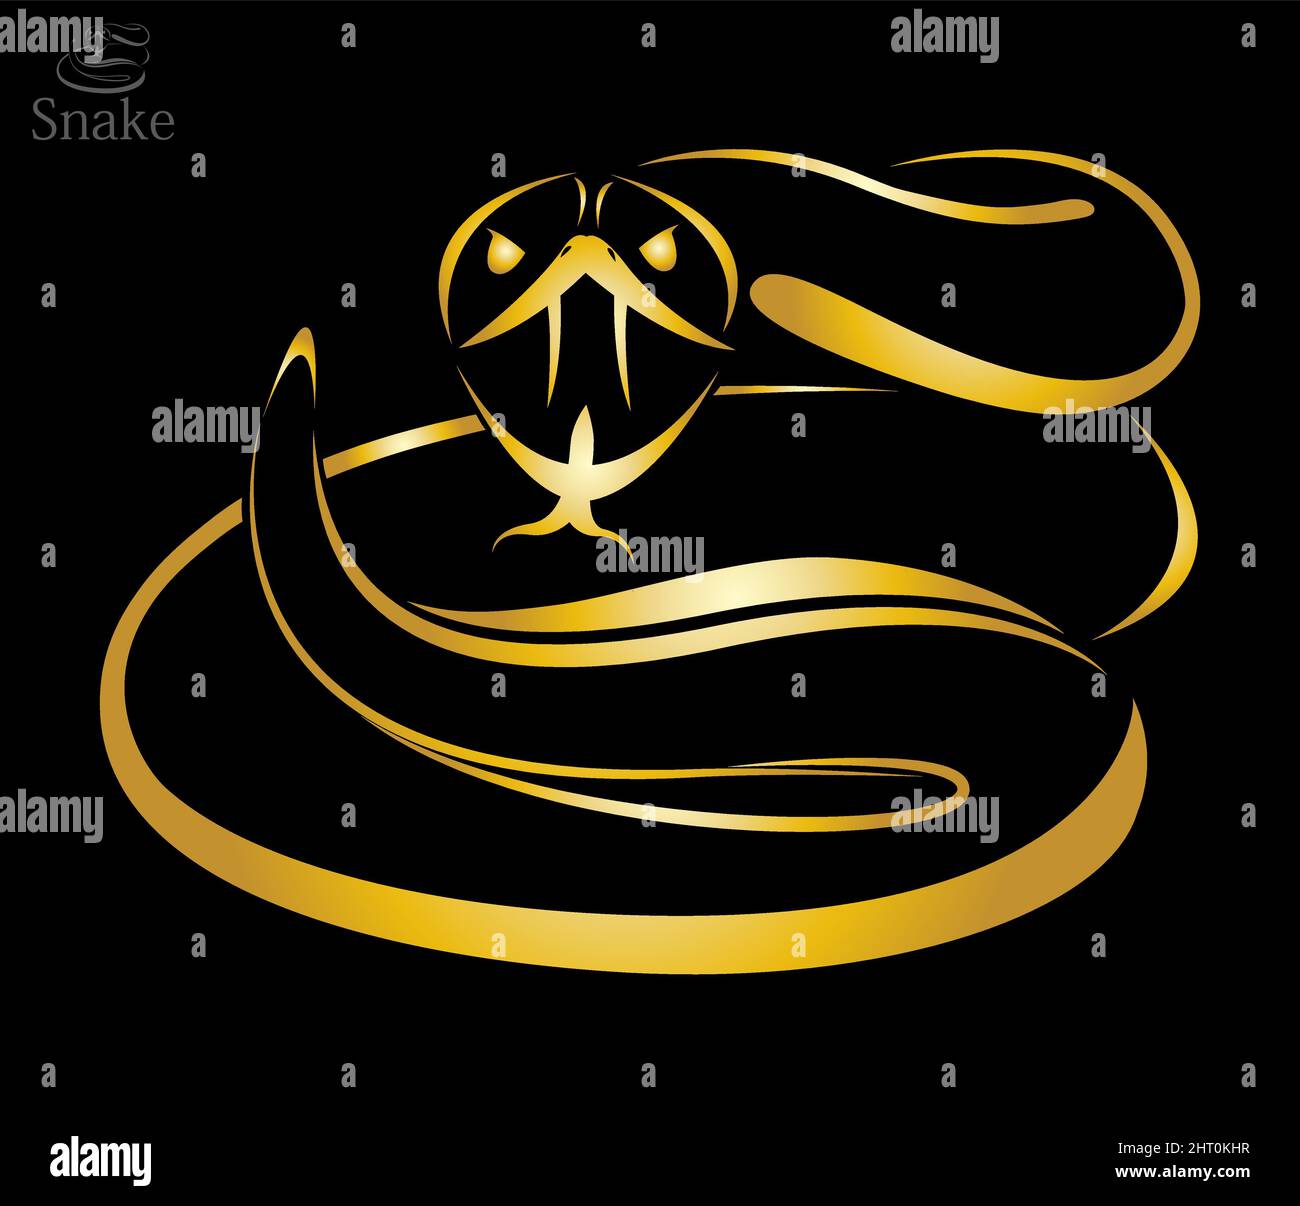 Image vectorielle d'un serpent doré sur fond noir. Illustration vectorielle superposée facile à modifier. Illustration de Vecteur